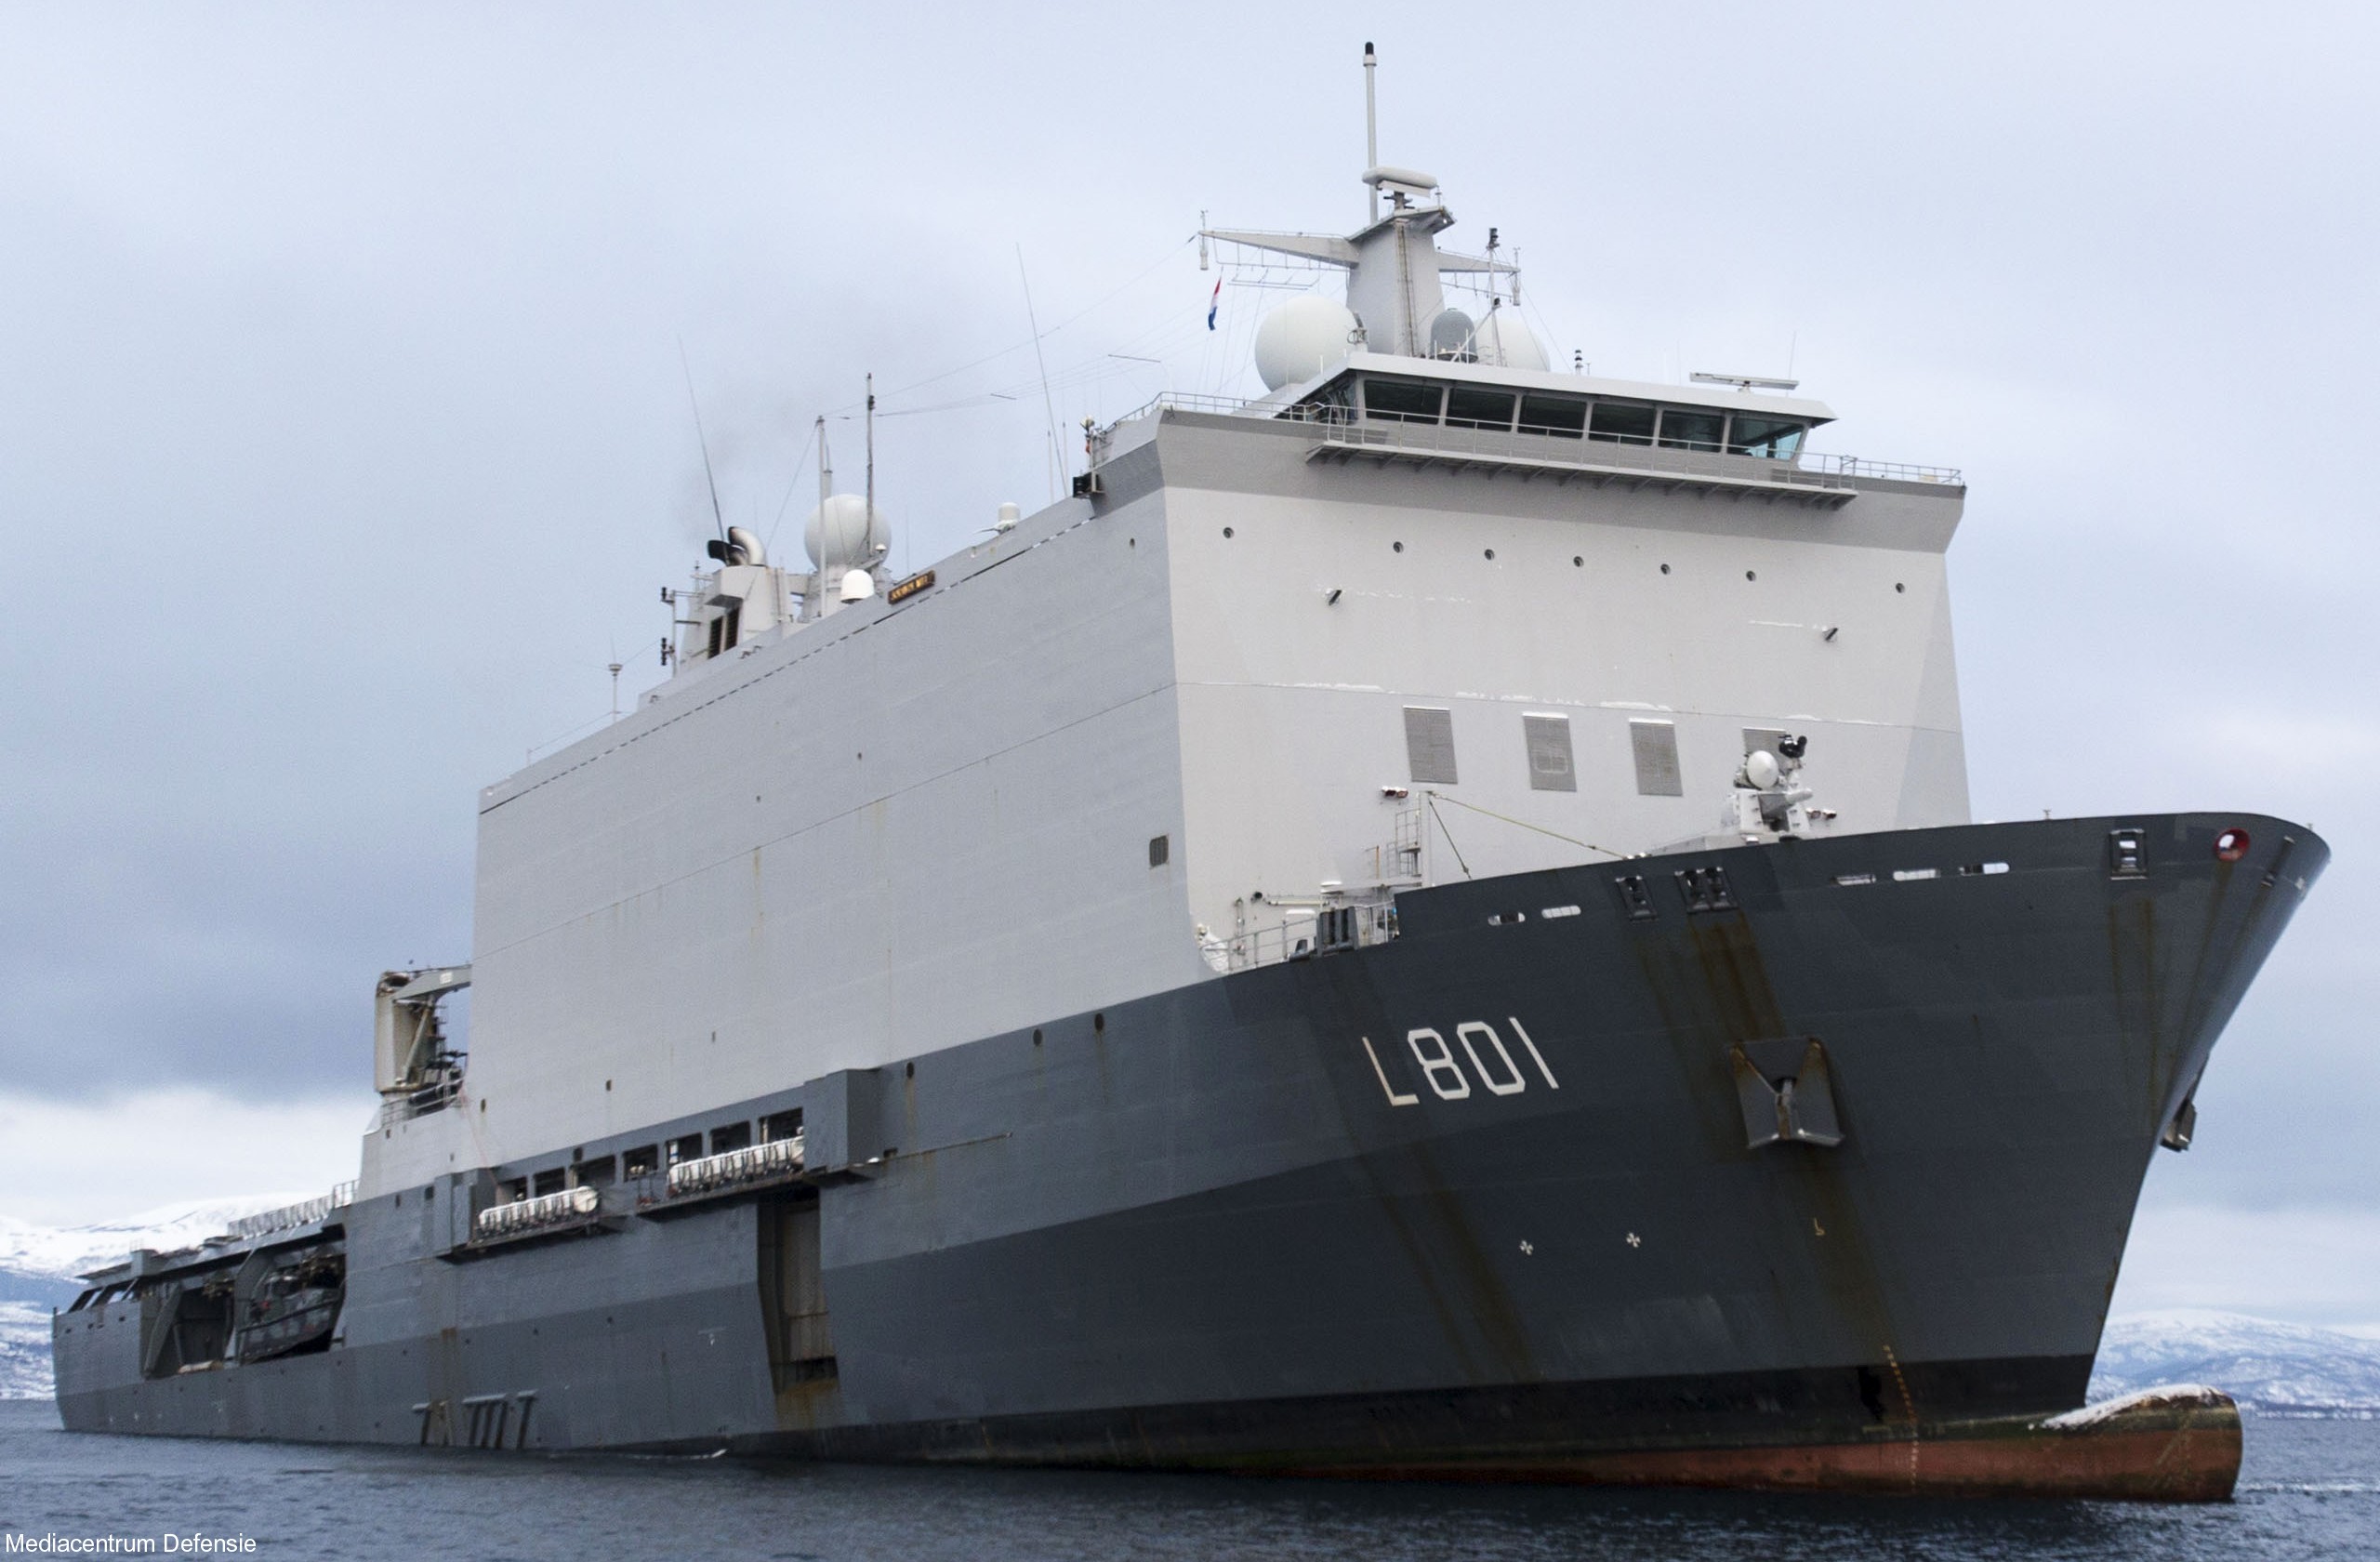 l-801 hnlms johan de witt amphibious ship landing platform dock lpd royal netherlands navy 04